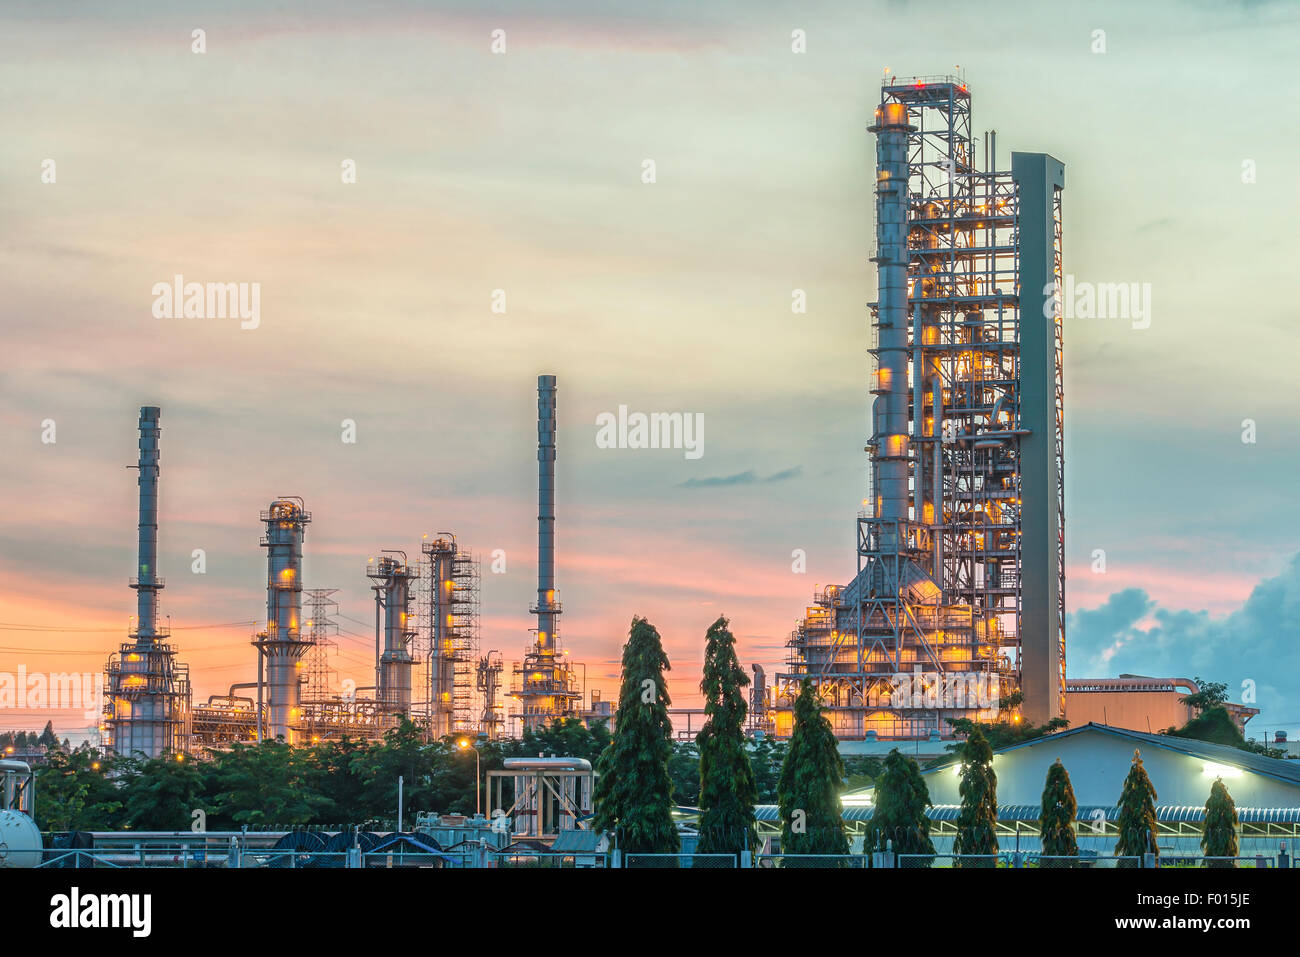 La refinería de petróleo y gas en la noche, Tailandia Foto de stock